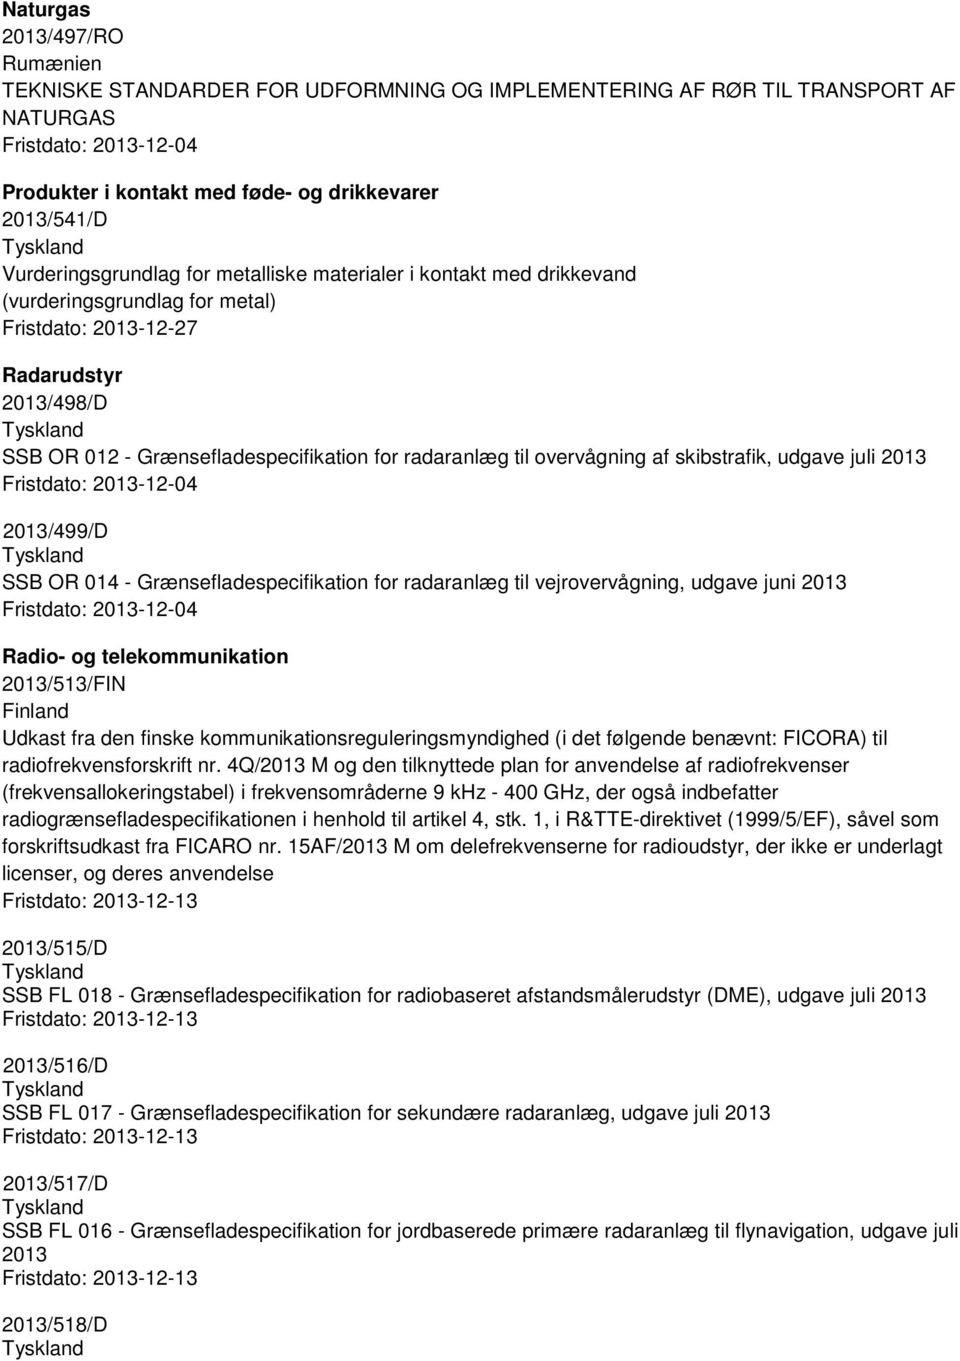 2013 2013/499/D SSB OR 014 - Grænsefladespecifikation for radaranlæg til vejrovervågning, udgave juni 2013 Radio- og telekommunikation 2013/513/FIN Udkast fra den finske